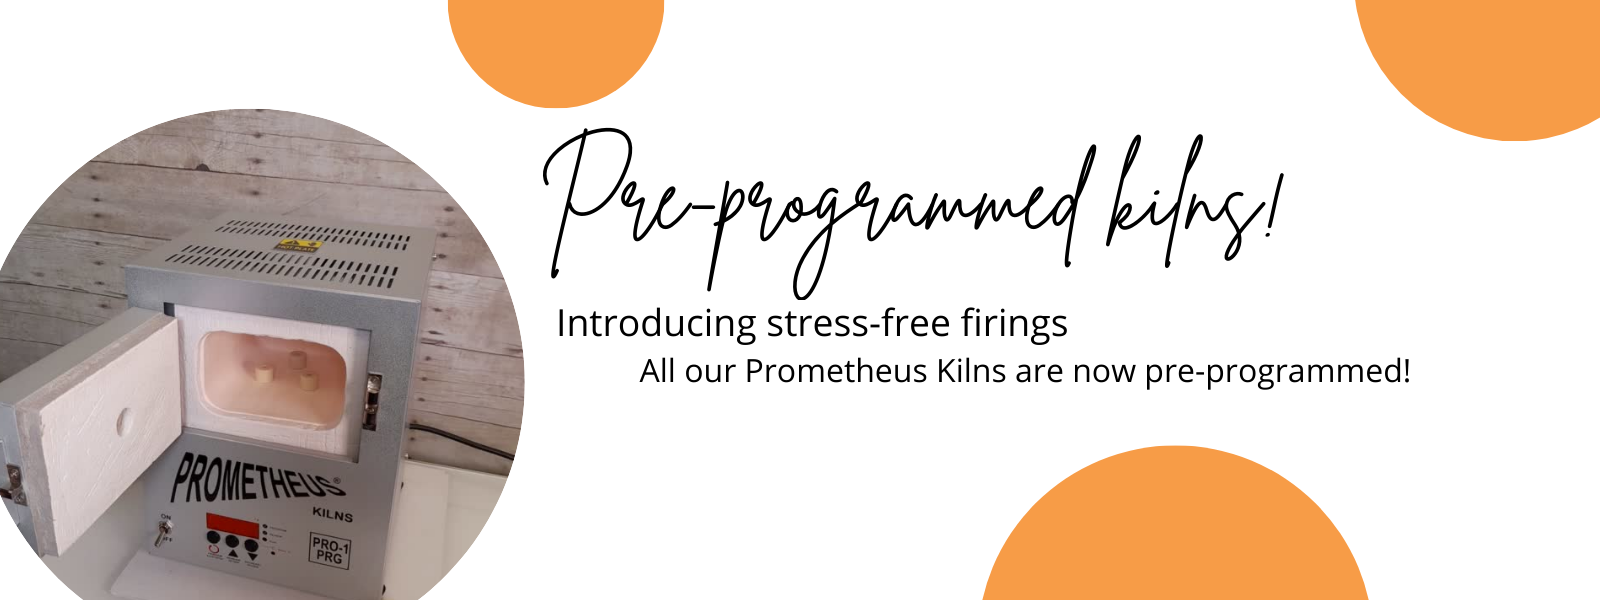 prometheus-kilns-now-pre-programmed.png